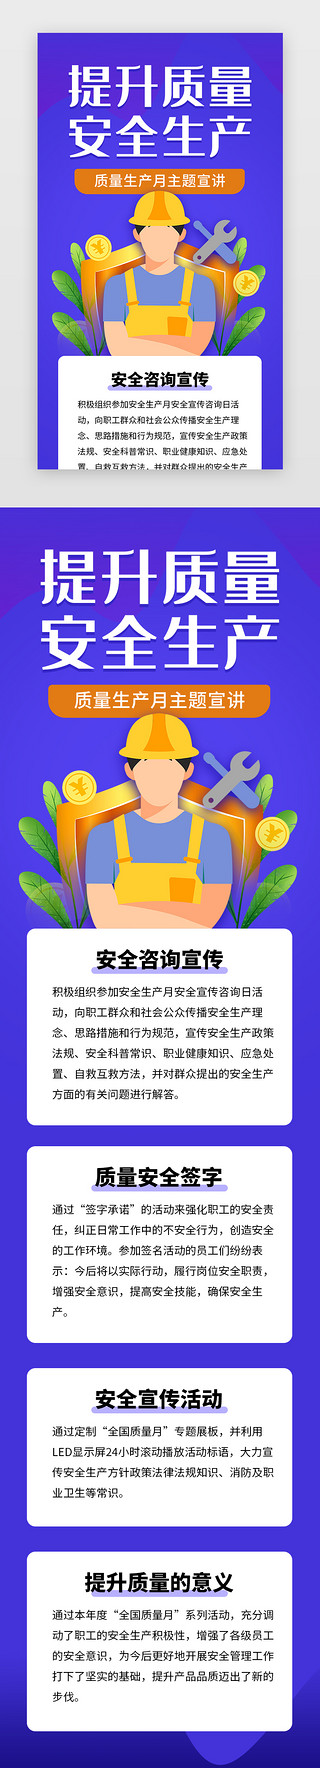 铁路工人剪影UI设计素材_提升质量安全生产h5立体蓝色工人